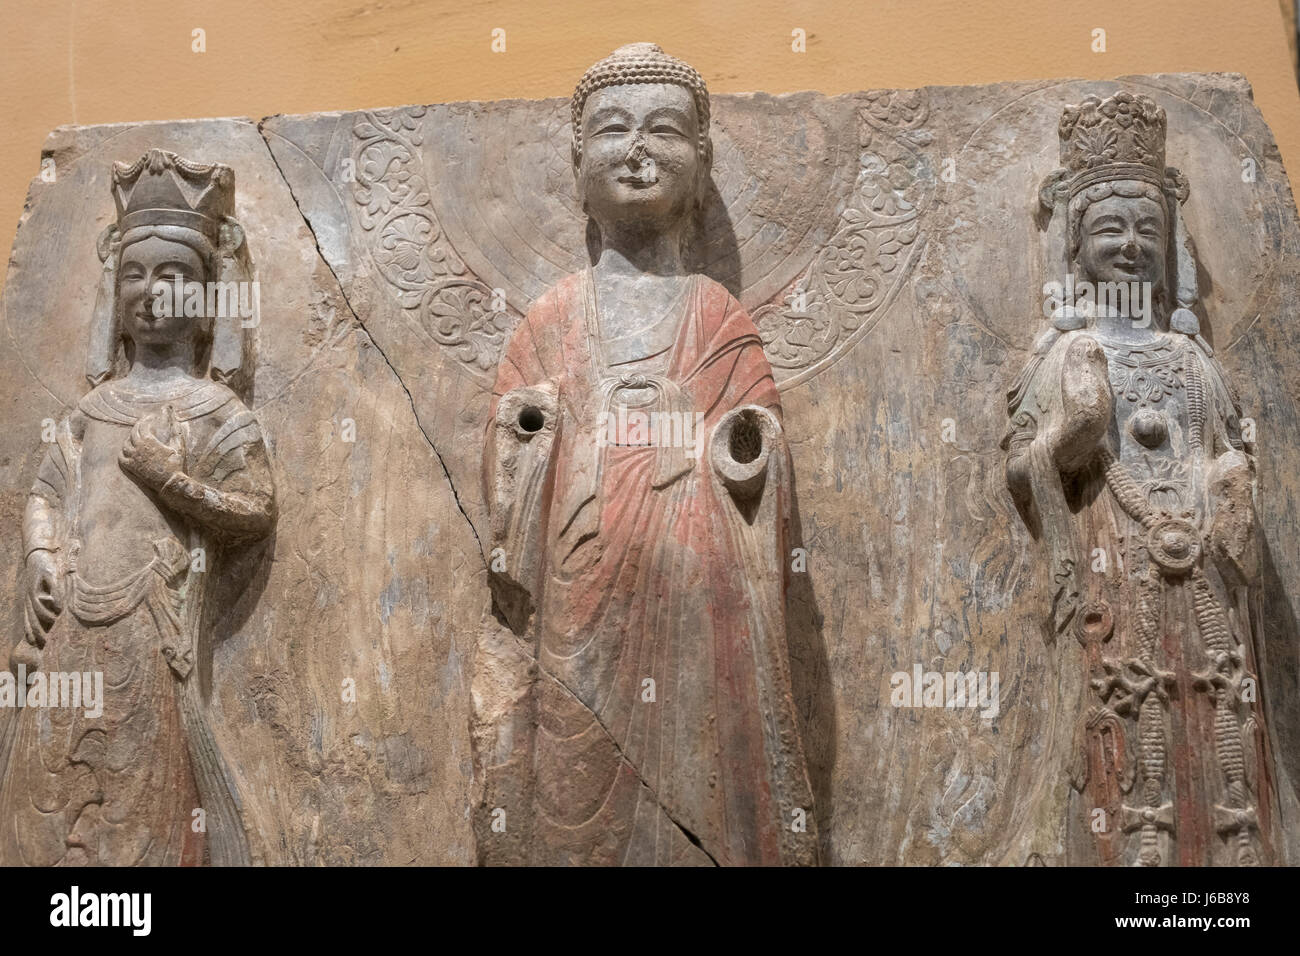 Teil von Carved Statue Buddhas und Bodhisattvas aus Qingzhou Longxing Kellern ausgegraben. Östliche Wei-Dynastie (534 C.E - 550 nChr) Qingzhou Museum. Stockfoto